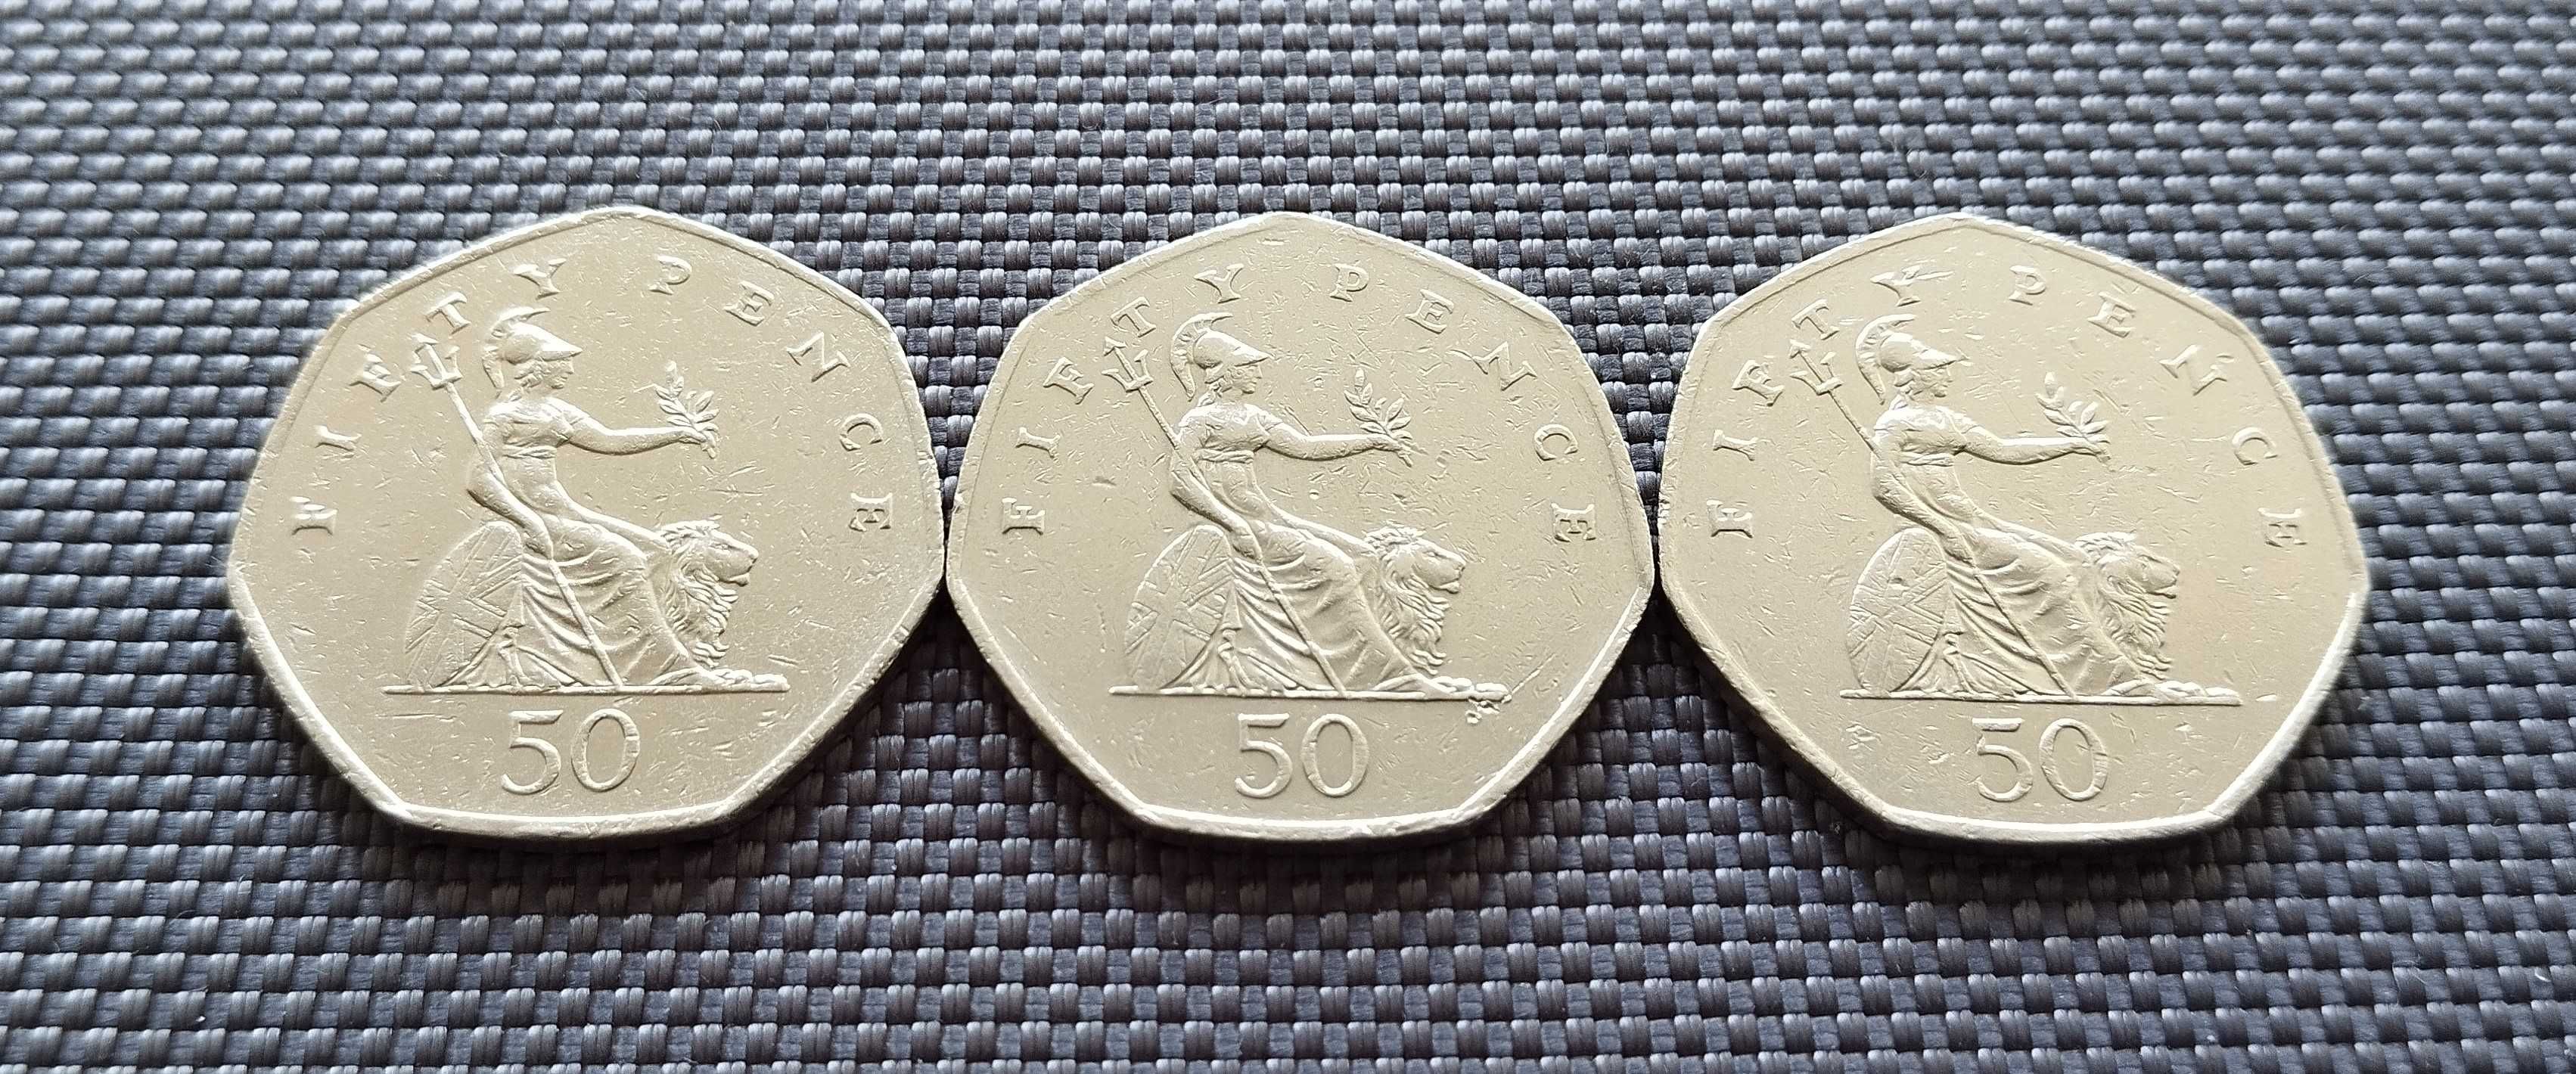 Коллекция монет Великобритании 50 пенсов . 3 шт за 120 грн.